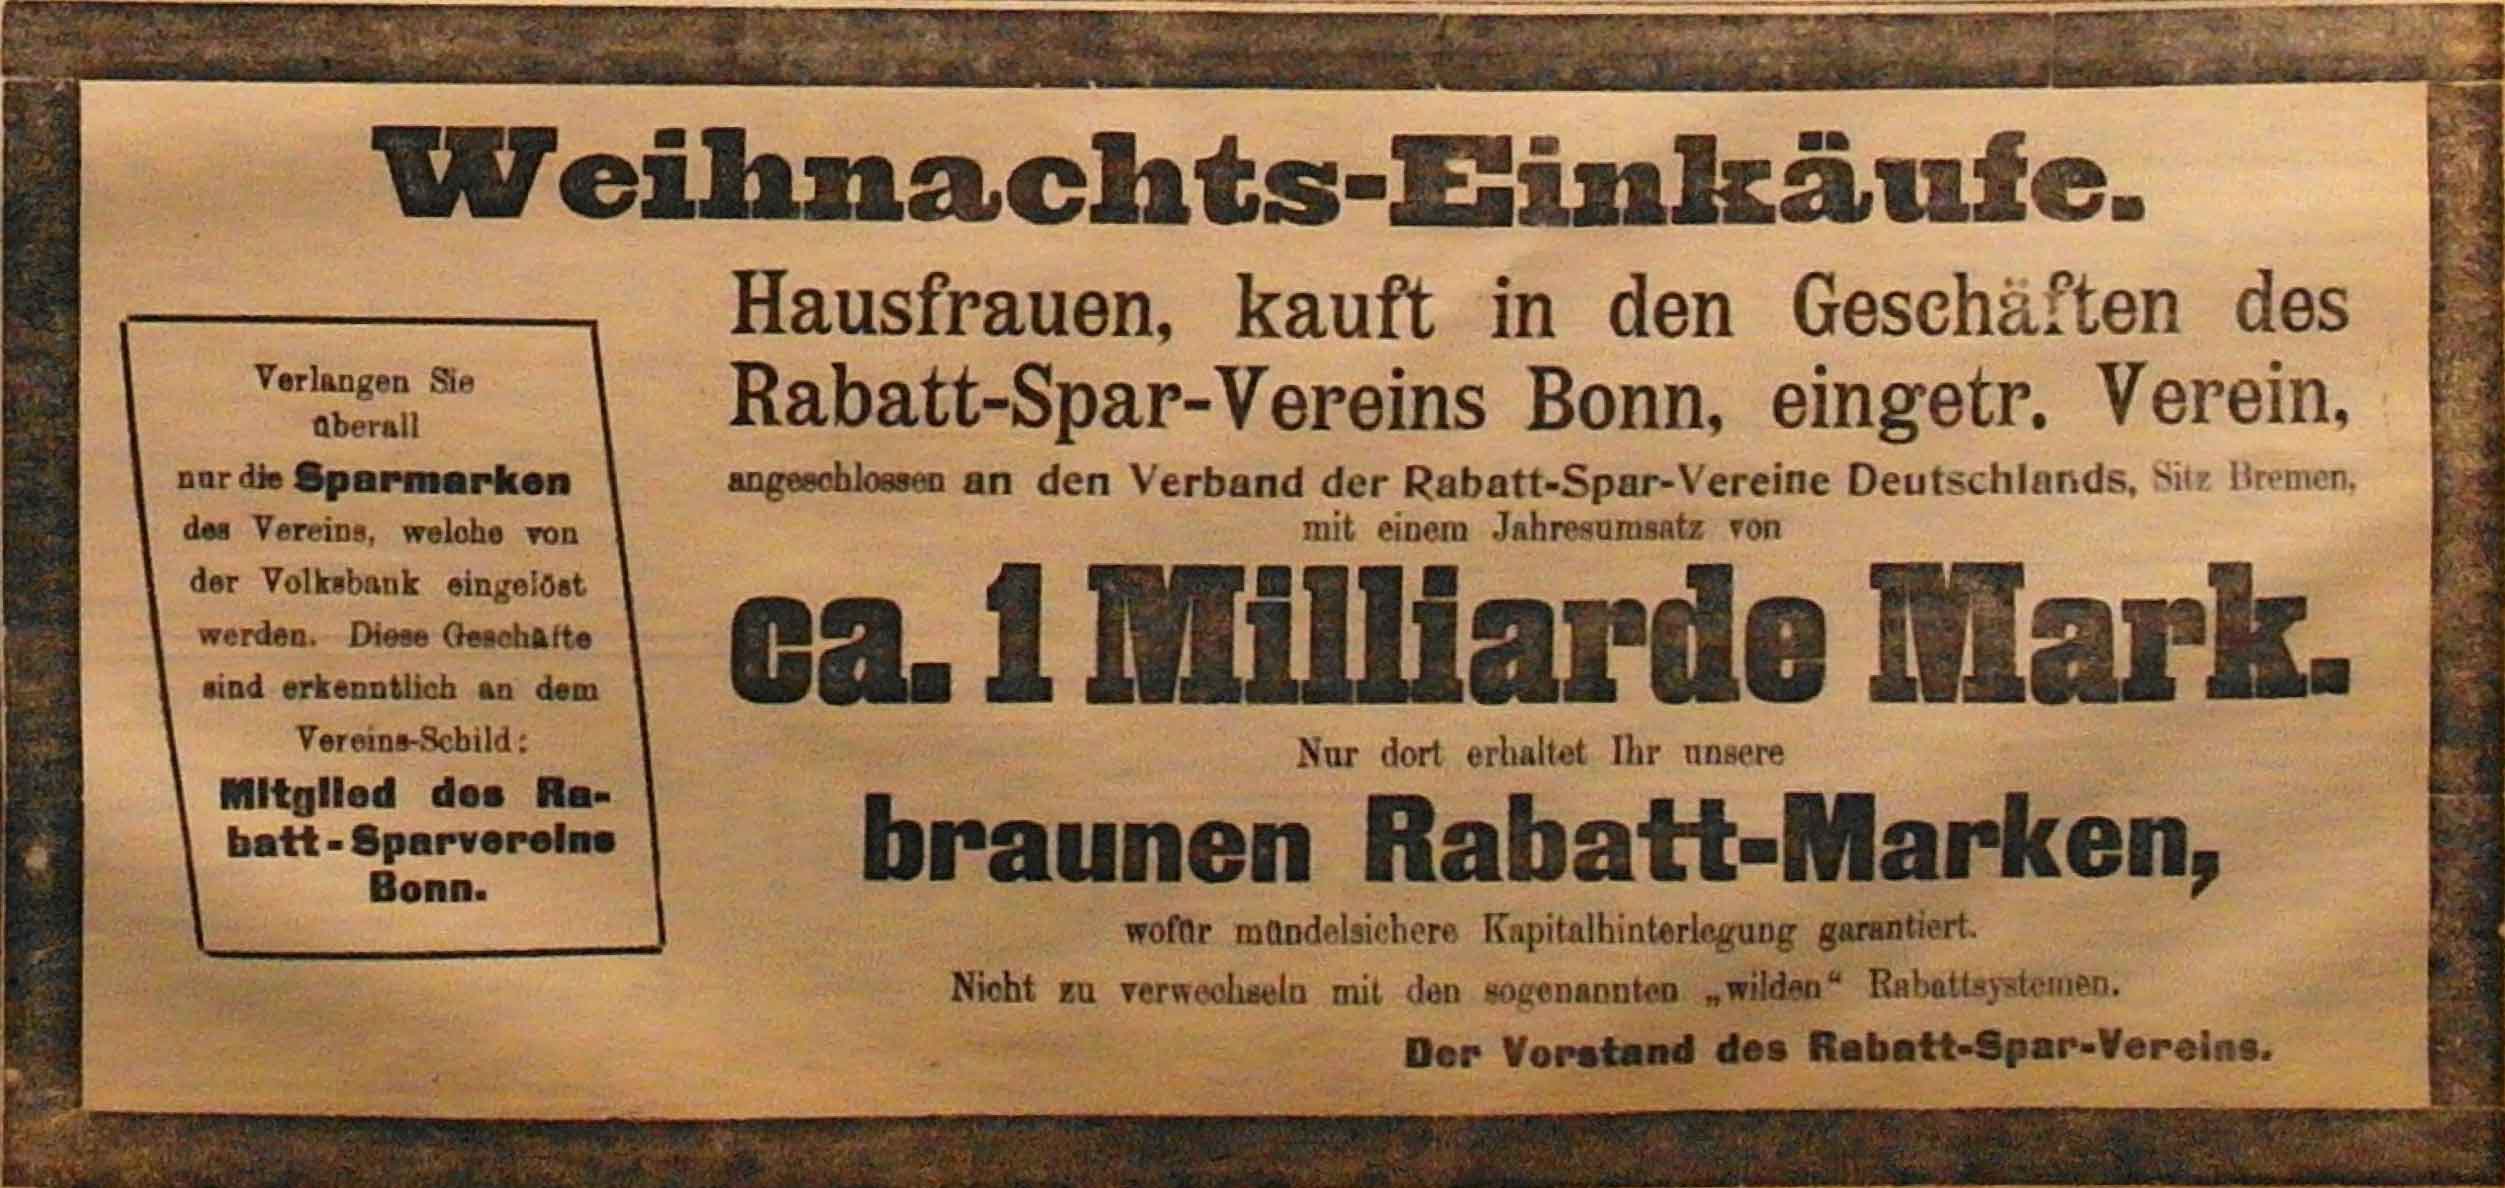 Anzeige in der Deutschen Reichszeitung vom 16. Dezember 1914